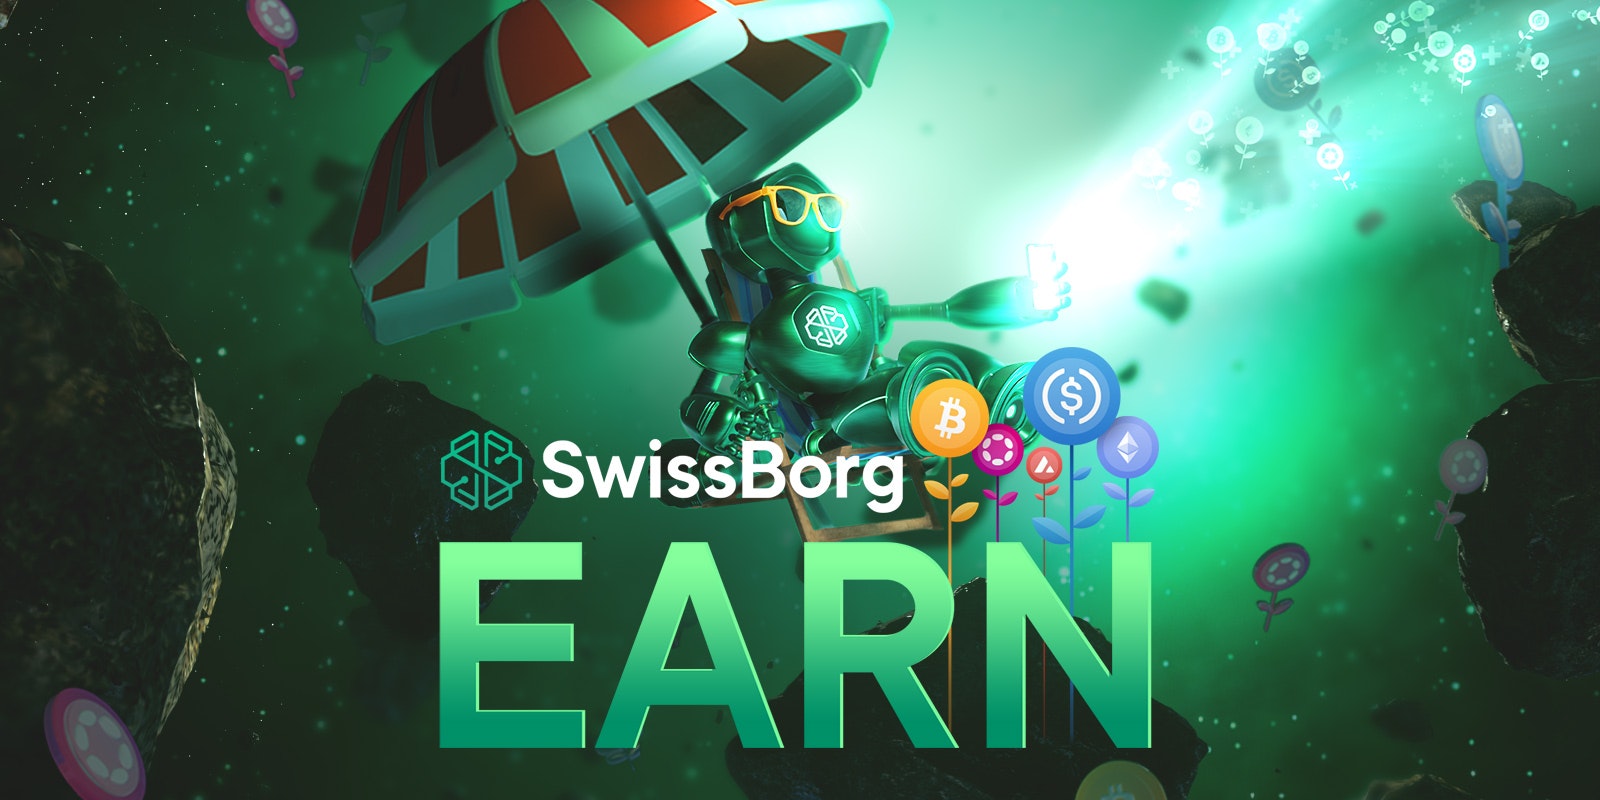 SwissBorg Earn